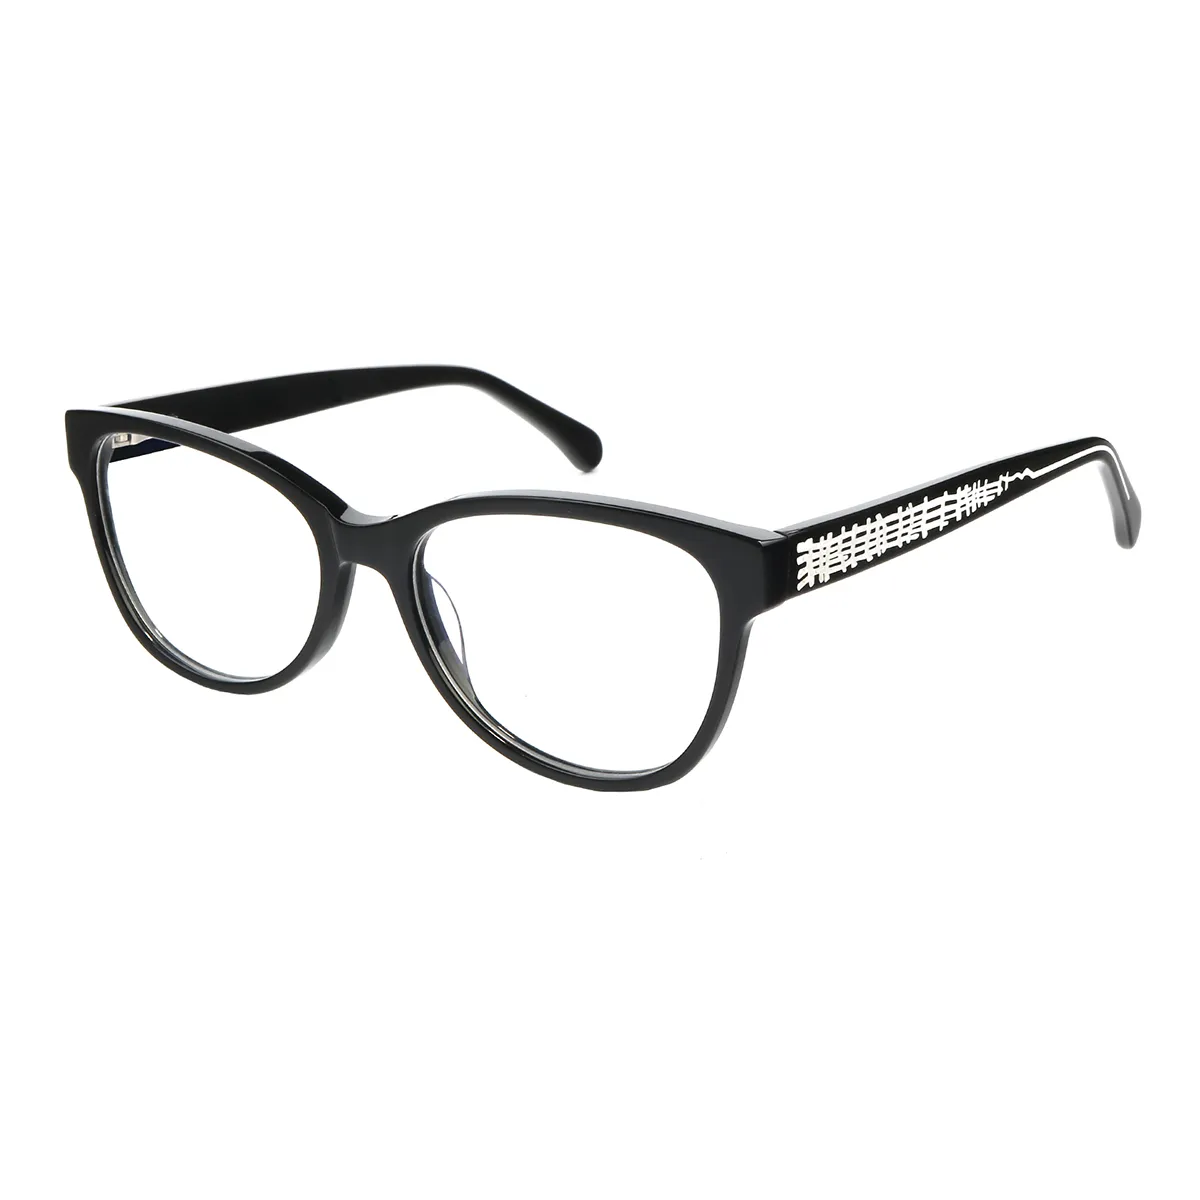 Ealex - Cat-eye Black Glasses for Women